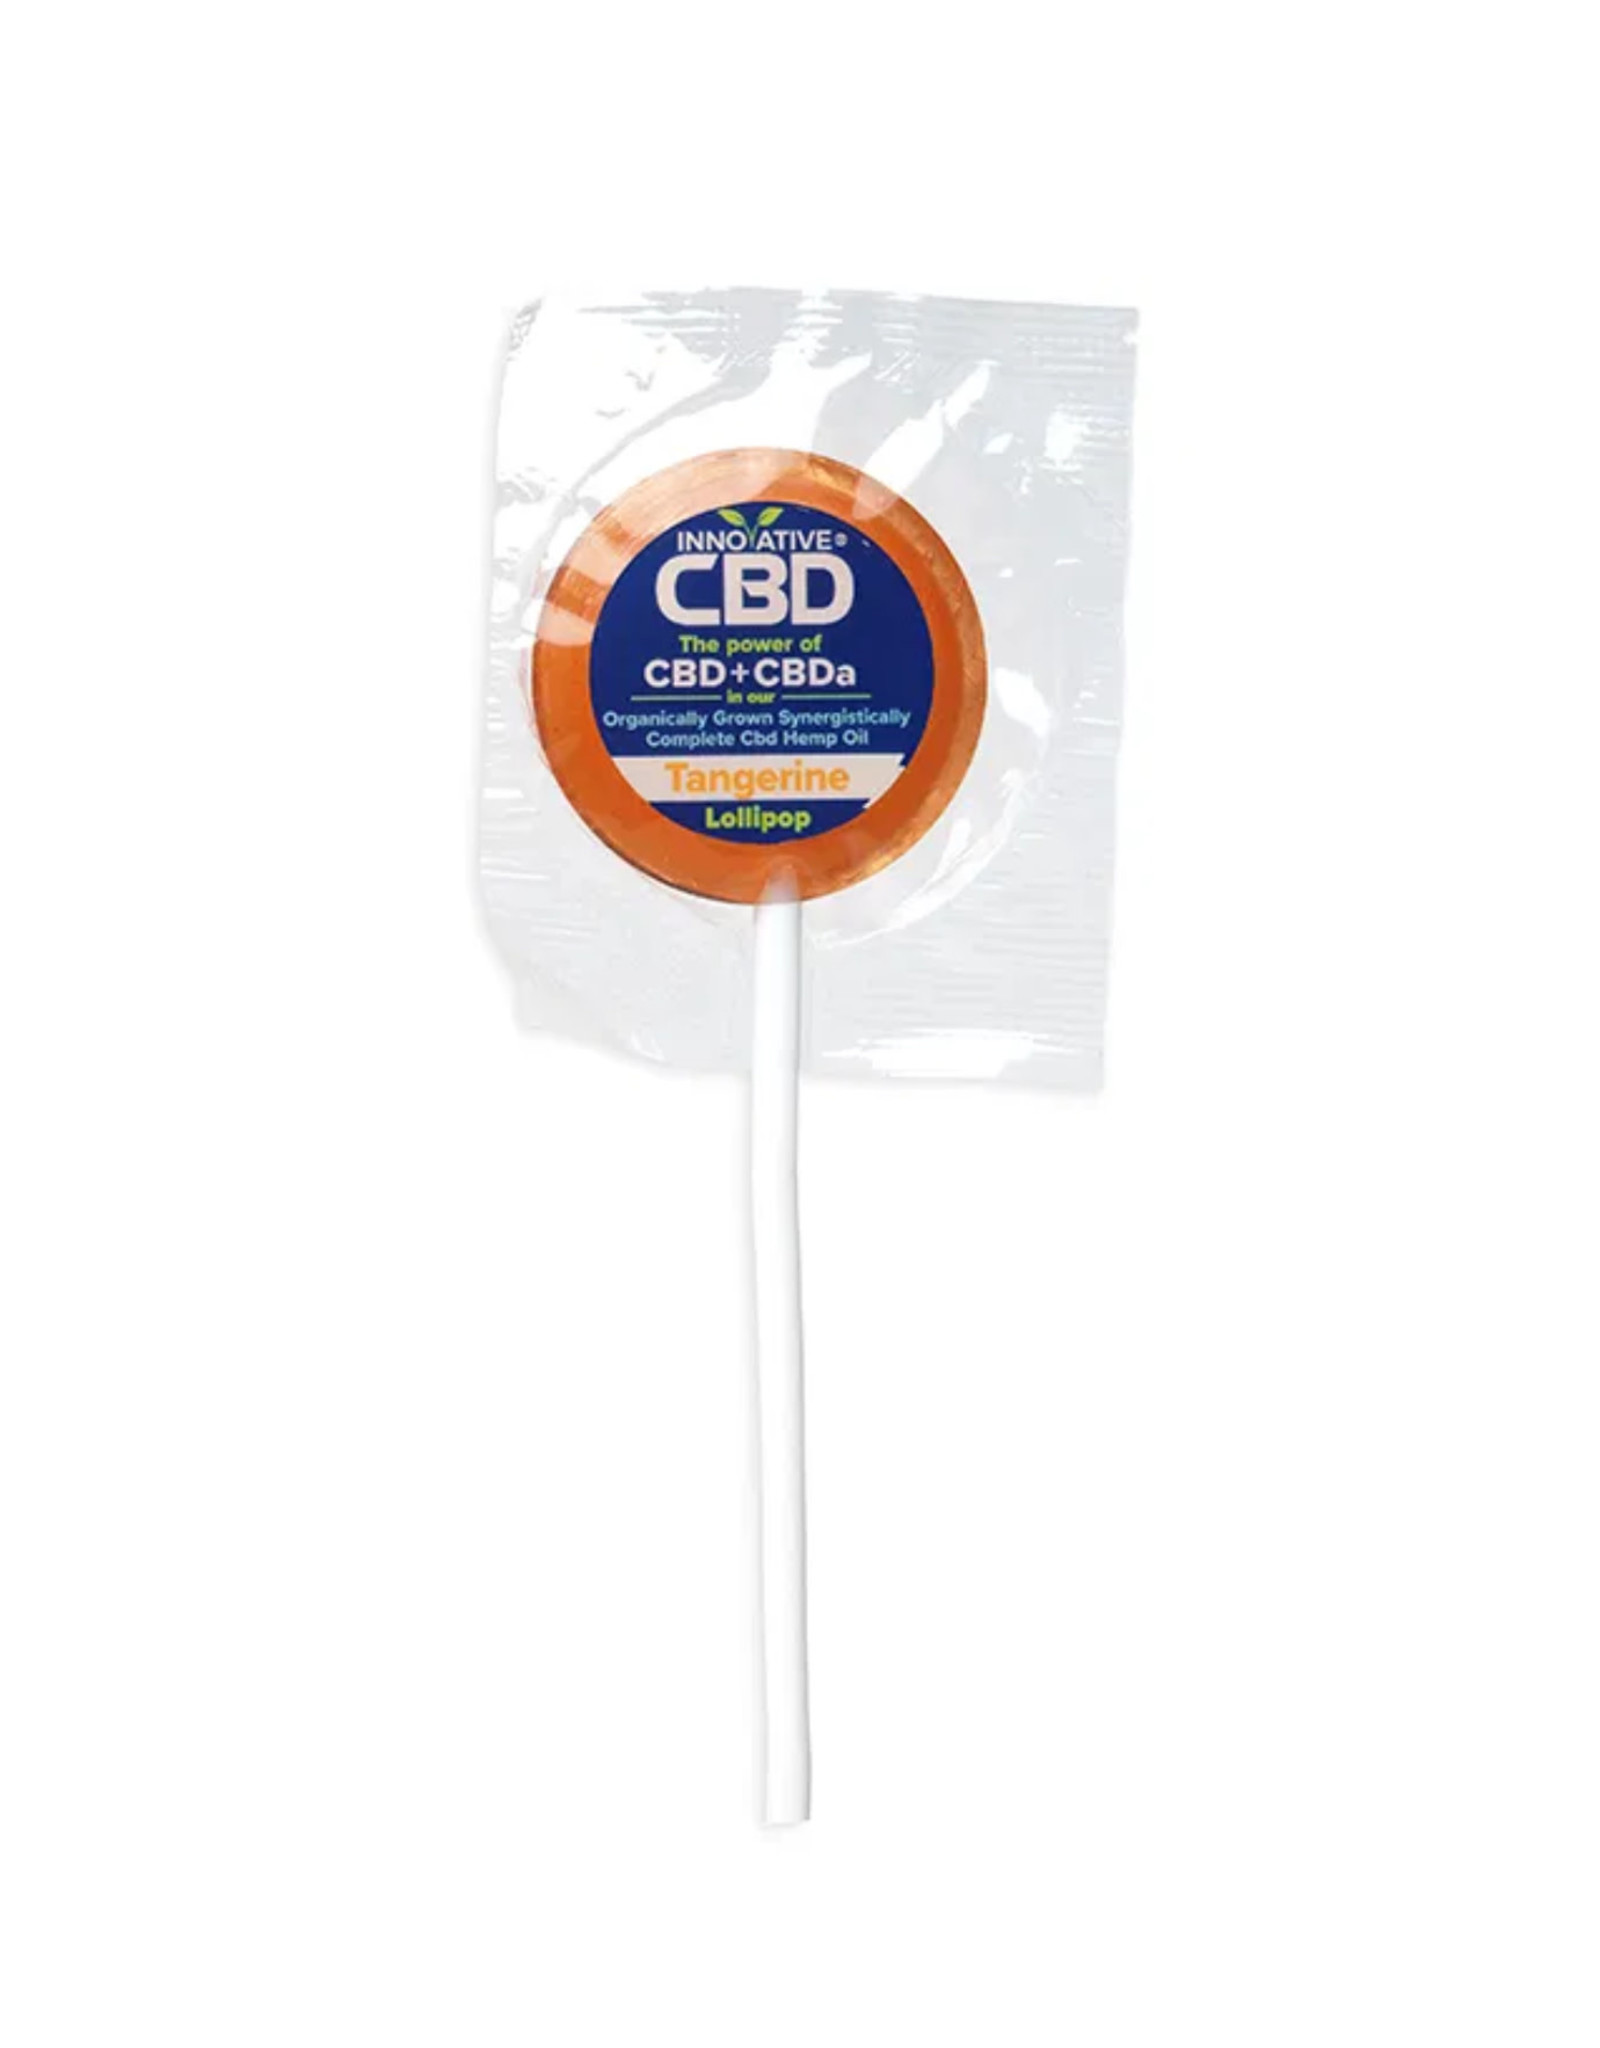 3mg CBD Tangerine Lollipop